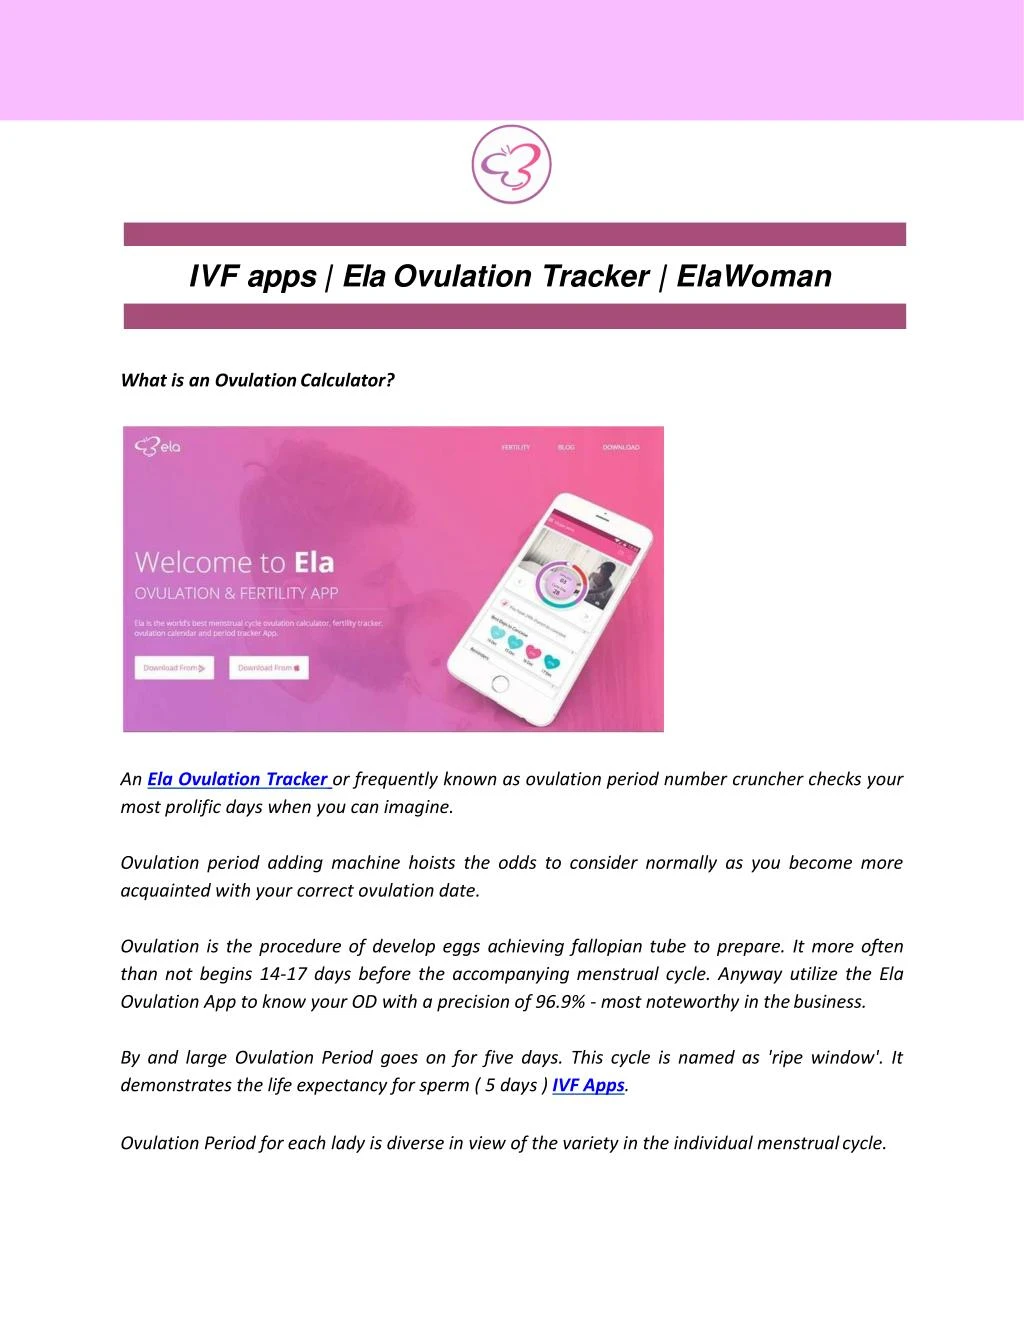 ivf apps ela ovulation tracker elawoman